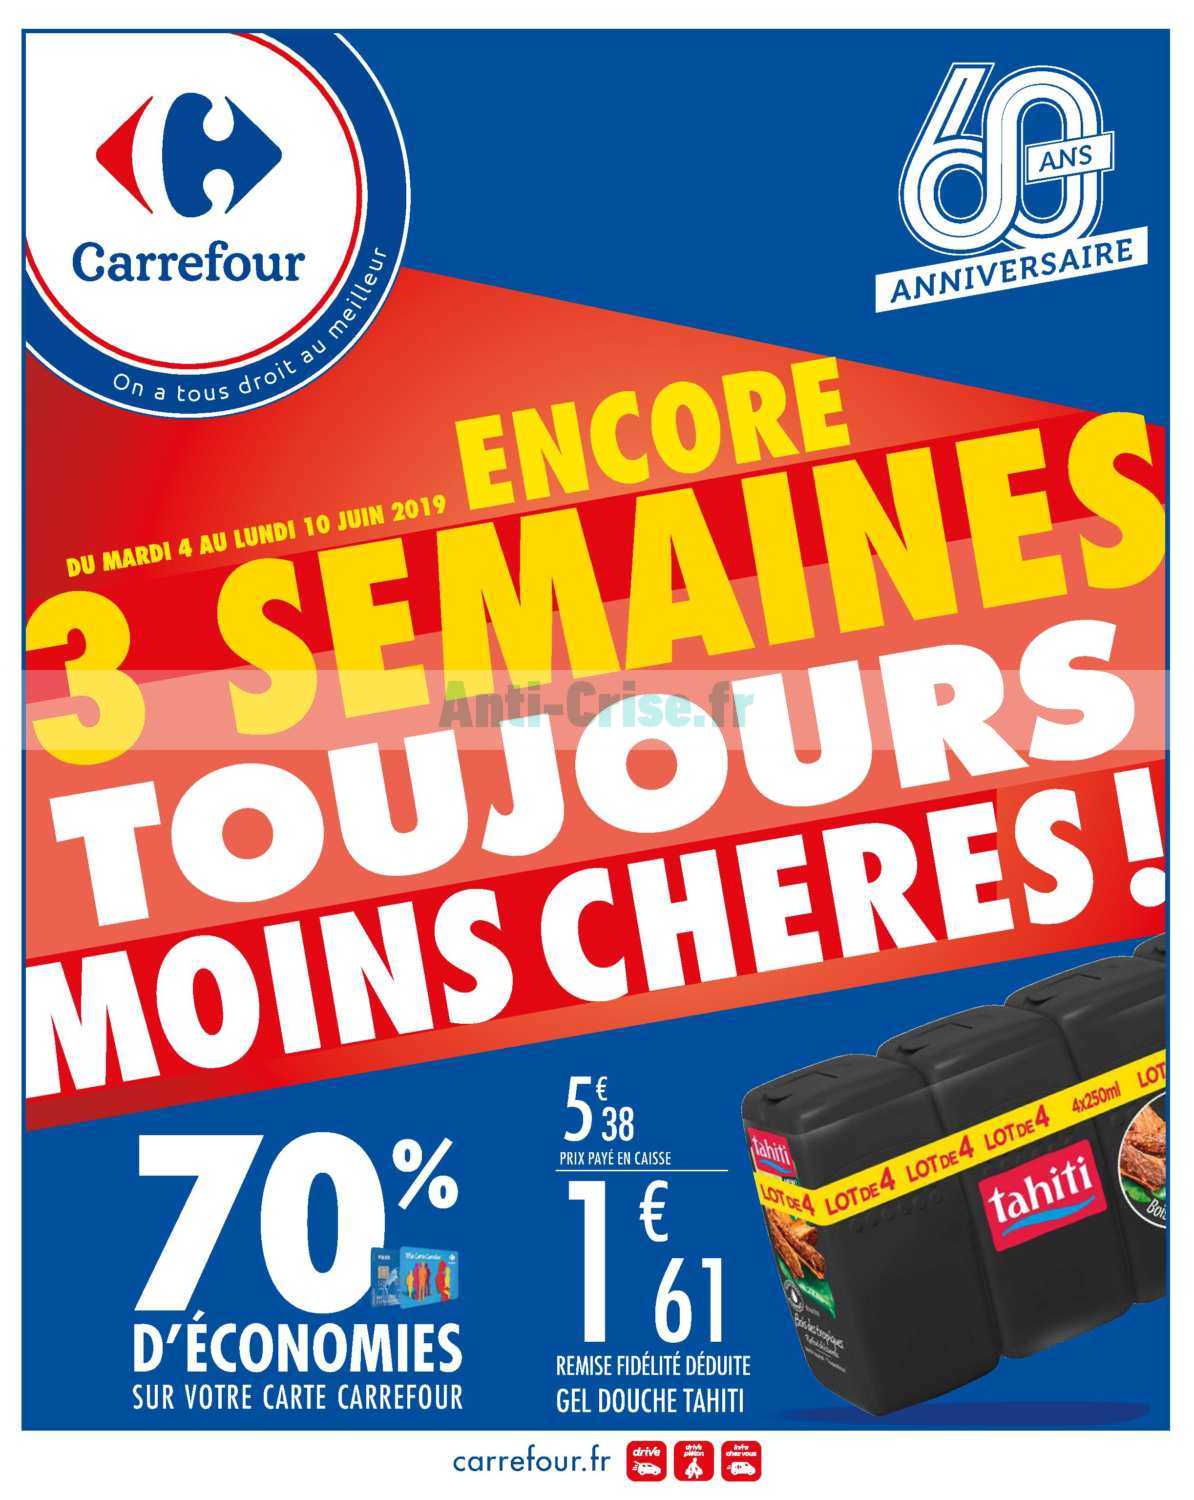 Carrefour Le Nouveau Catalogue Du 04 Au 10 Juin 19 Est Disponible Voici Les Dernieres Promos A Ne Pas Manquer